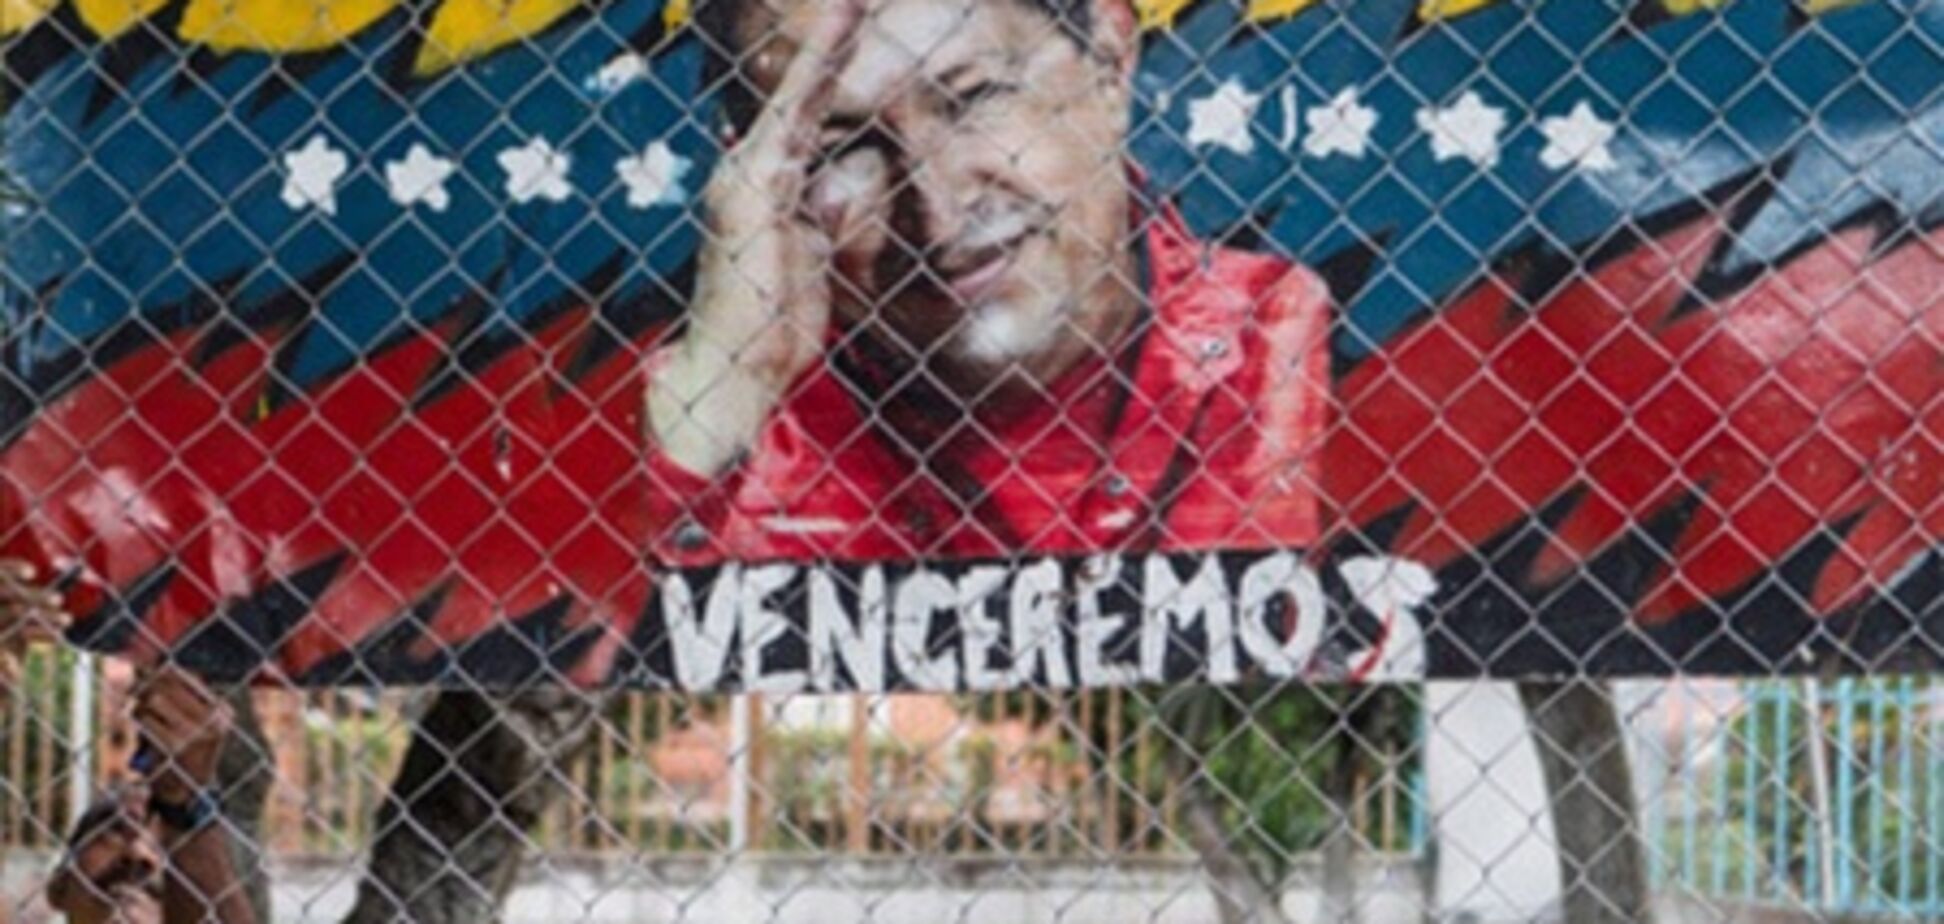 Чавес не может говорить из-за последствий лечения